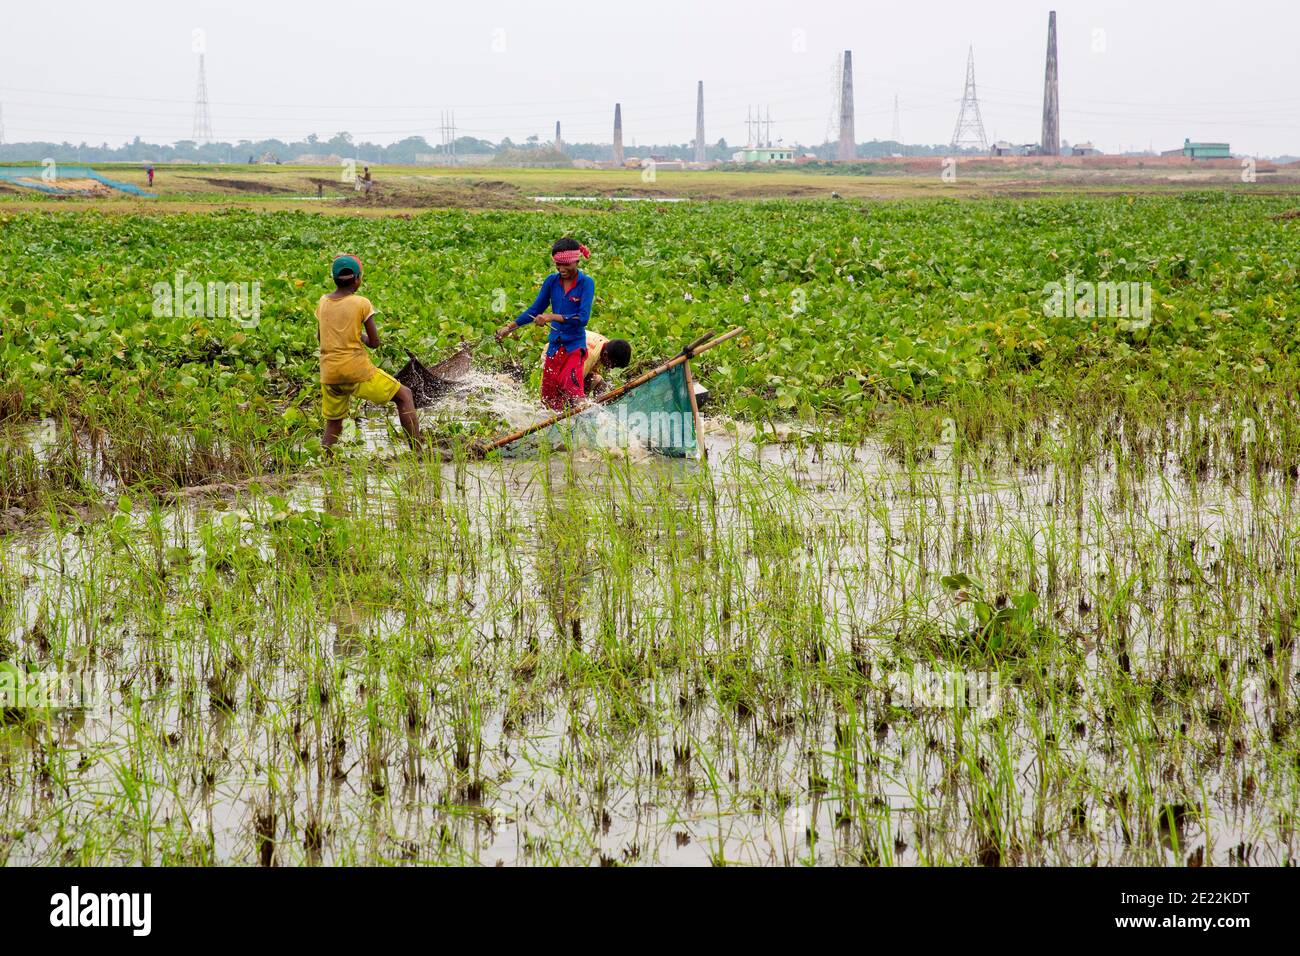 Ragazzi rurali che pescano il pesce dal campo di risaie bagnato, Brahmanbaria, Chittagong, Bangladesh. Foto Stock